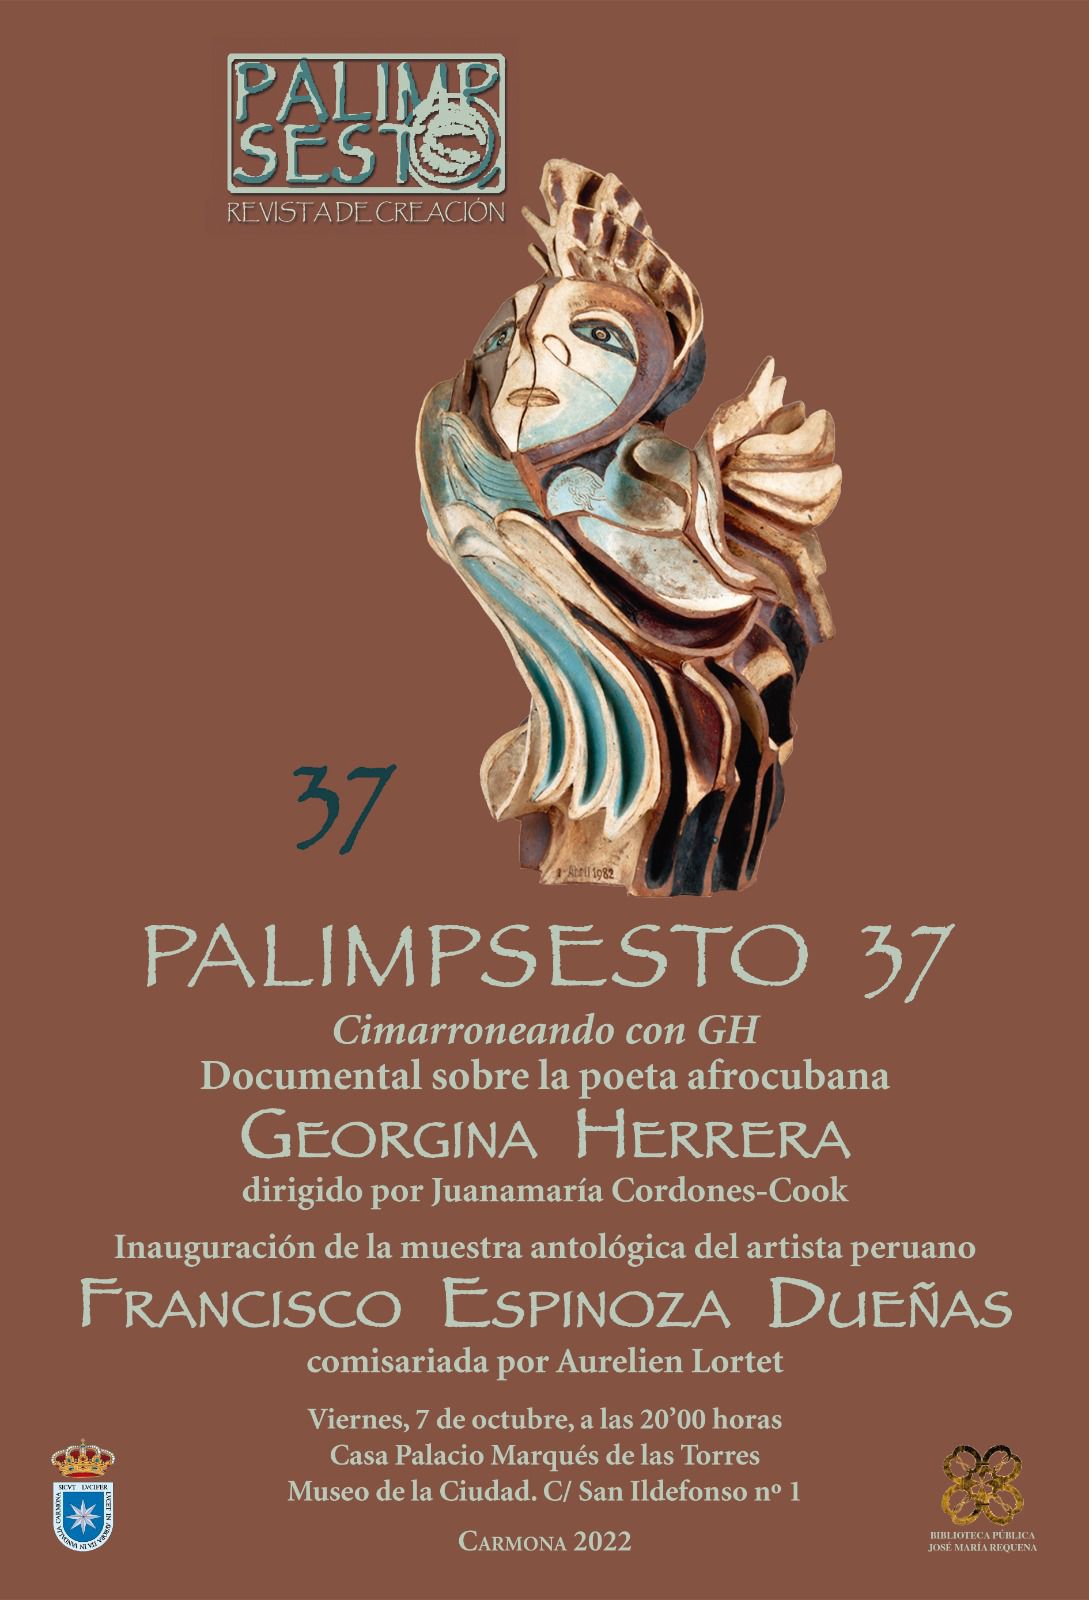 Palimpsesto 37 se presenta en sociedad en Carmona en octubre 